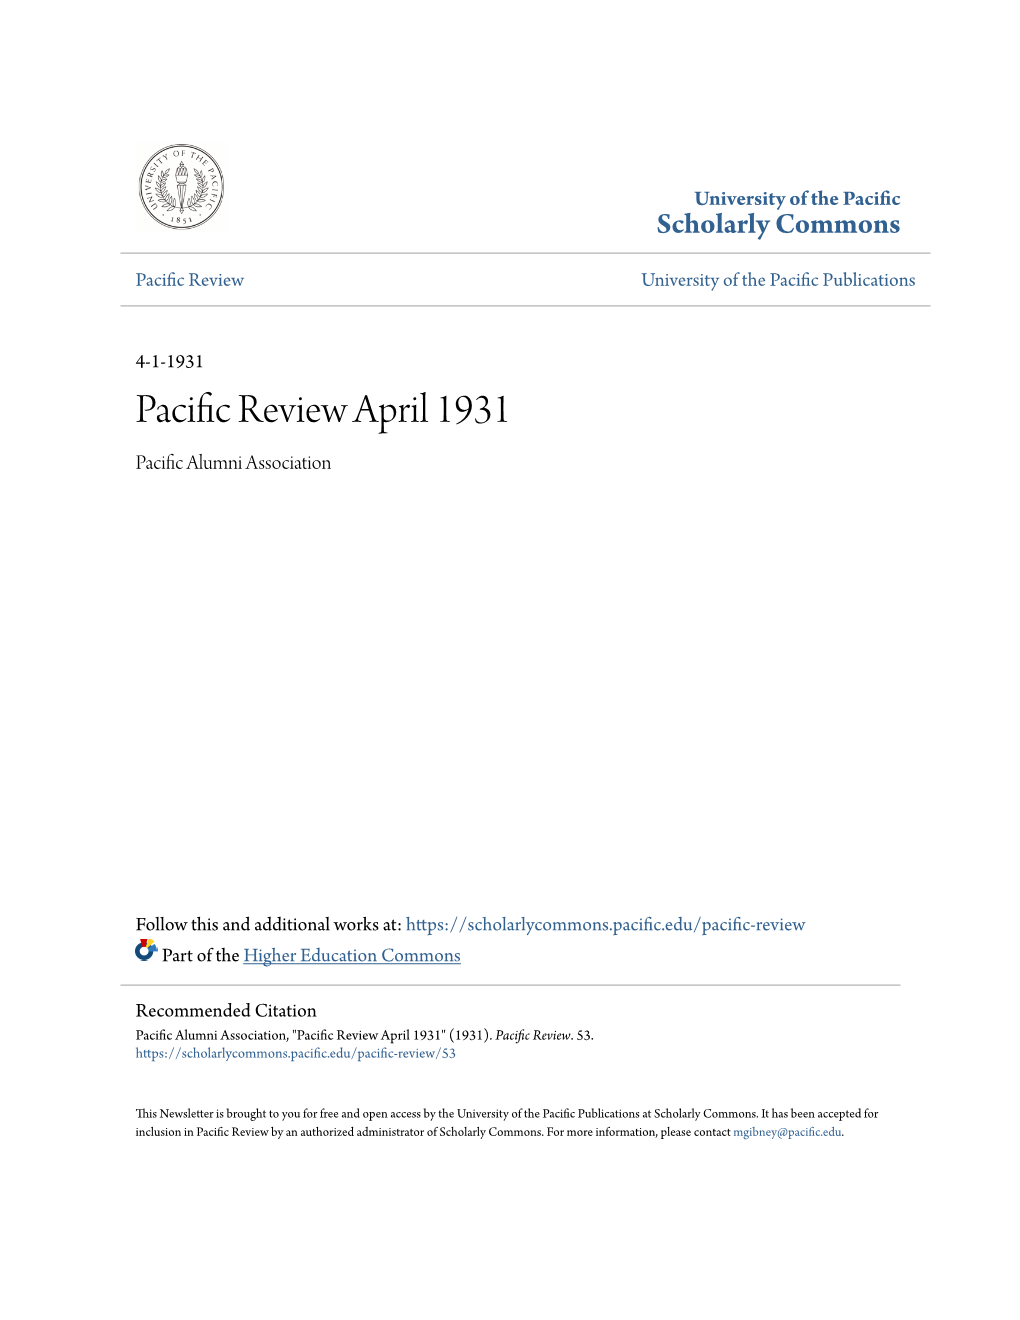 Pacific Review April 1931 Pacific Alumni Association